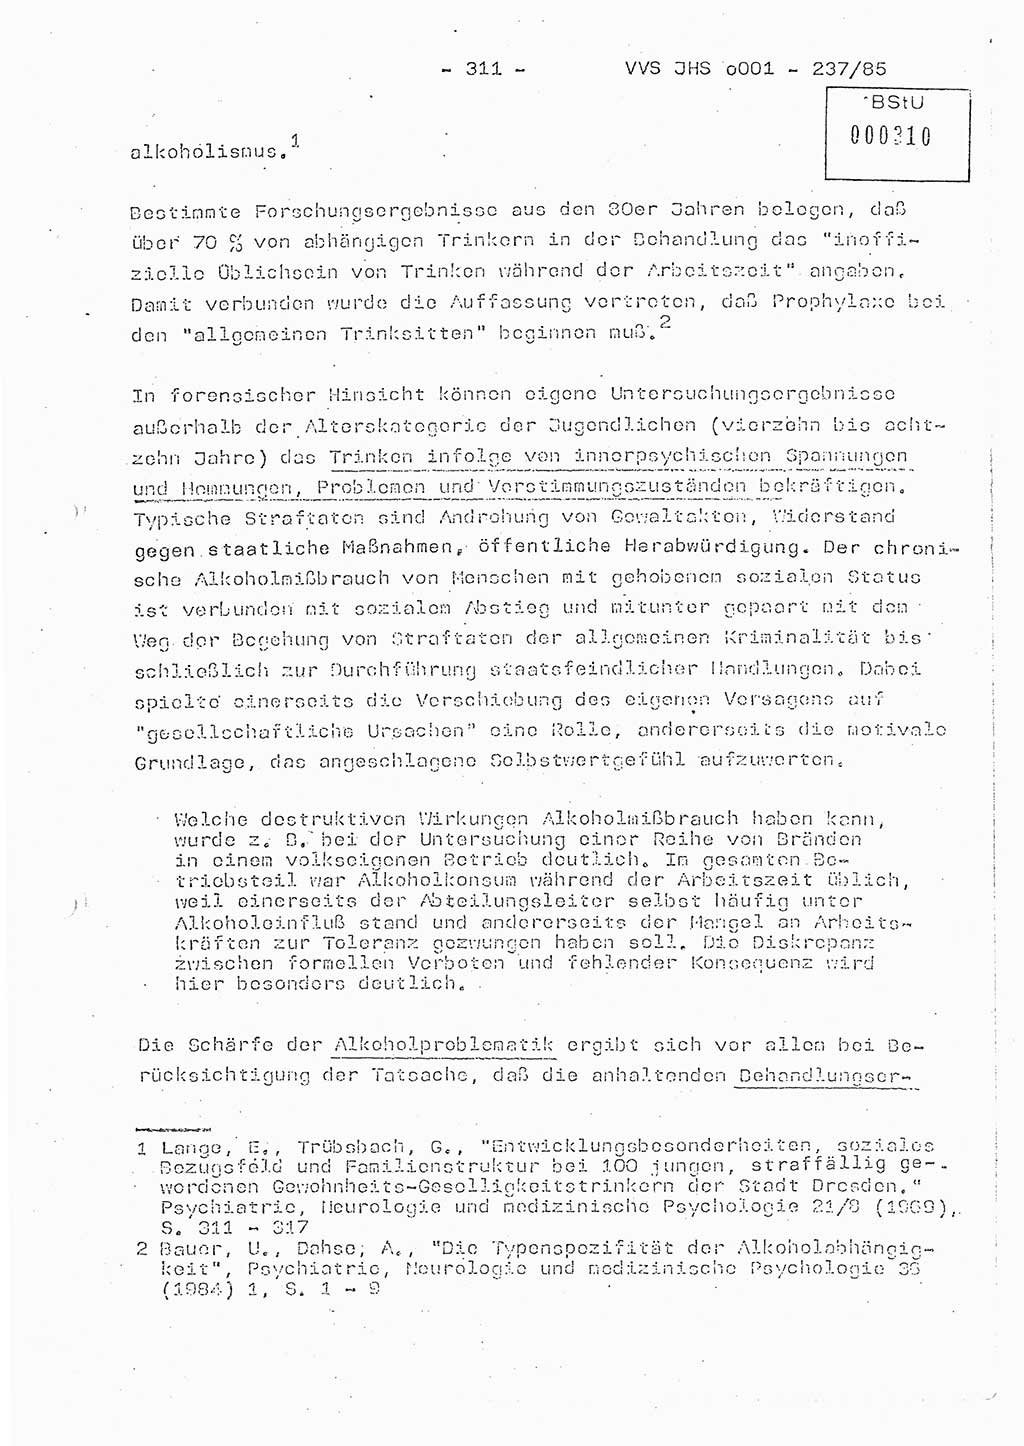 Dissertation Oberstleutnant Peter Jakulski (JHS), Oberstleutnat Christian Rudolph (HA Ⅸ), Major Horst Böttger (ZMD), Major Wolfgang Grüneberg (JHS), Major Albert Meutsch (JHS), Ministerium für Staatssicherheit (MfS) [Deutsche Demokratische Republik (DDR)], Juristische Hochschule (JHS), Vertrauliche Verschlußsache (VVS) o001-237/85, Potsdam 1985, Seite 311 (Diss. MfS DDR JHS VVS o001-237/85 1985, S. 311)